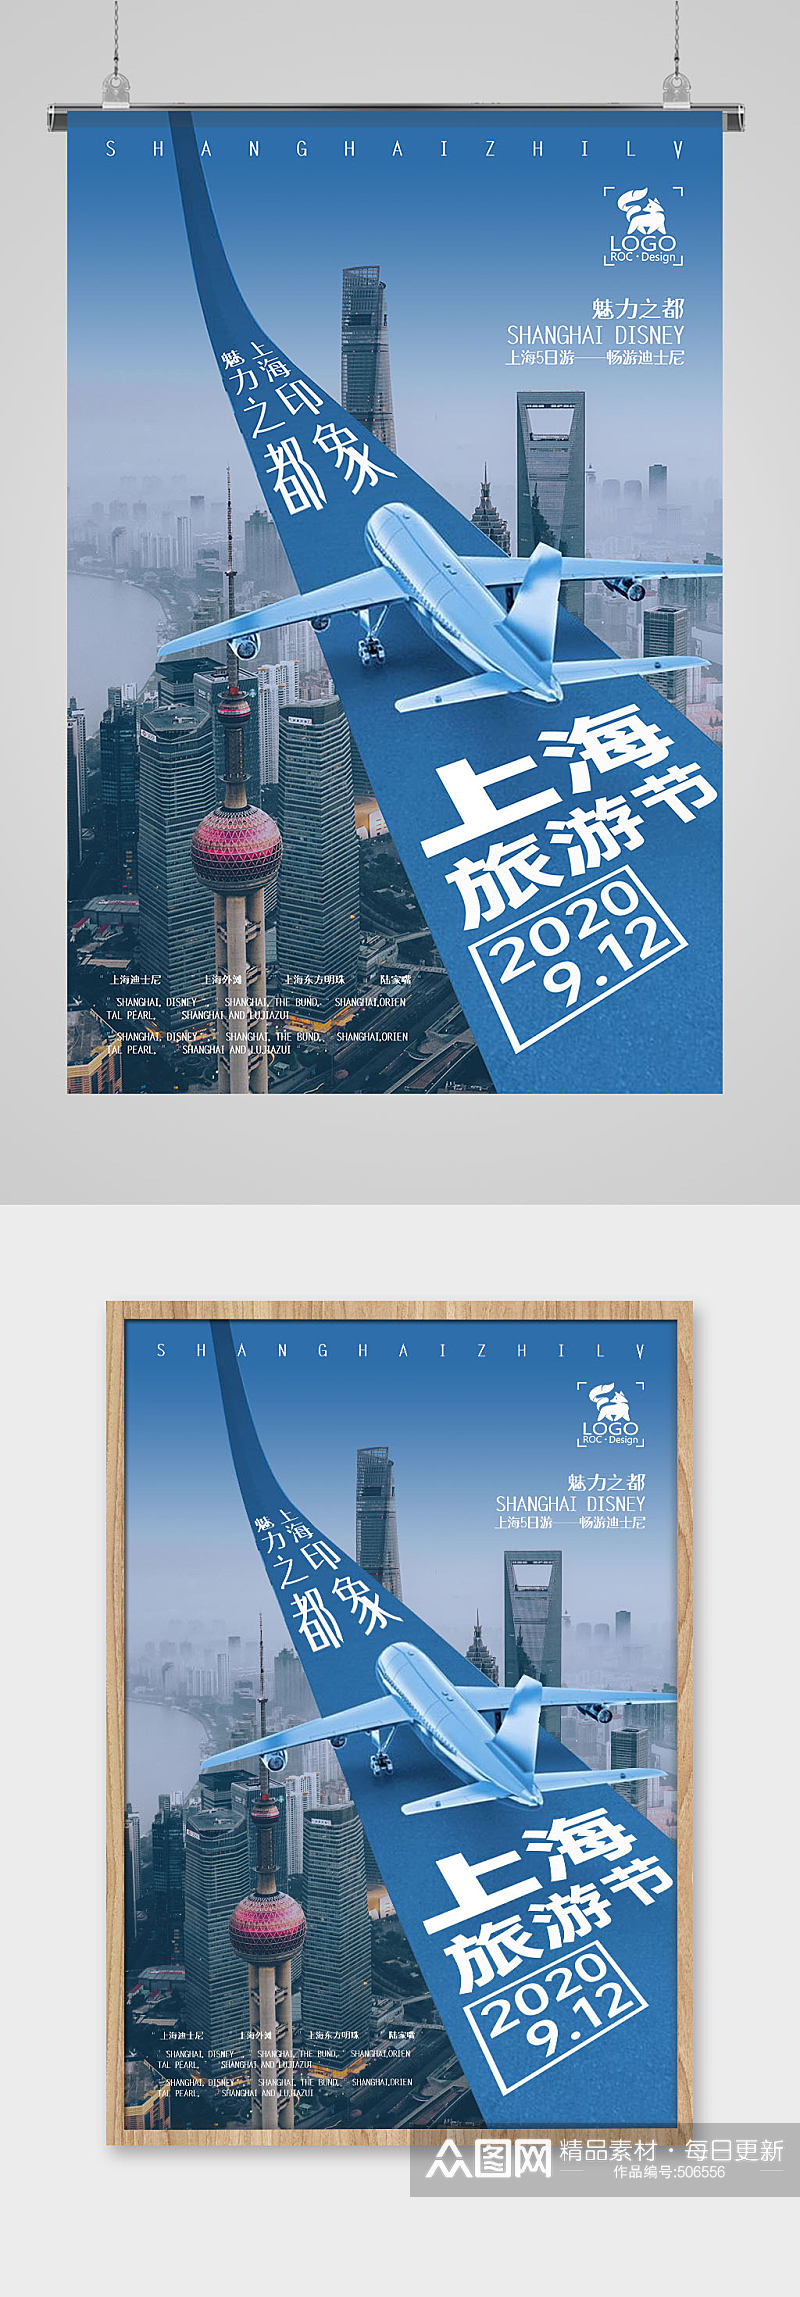 上海旅游节节日海报素材